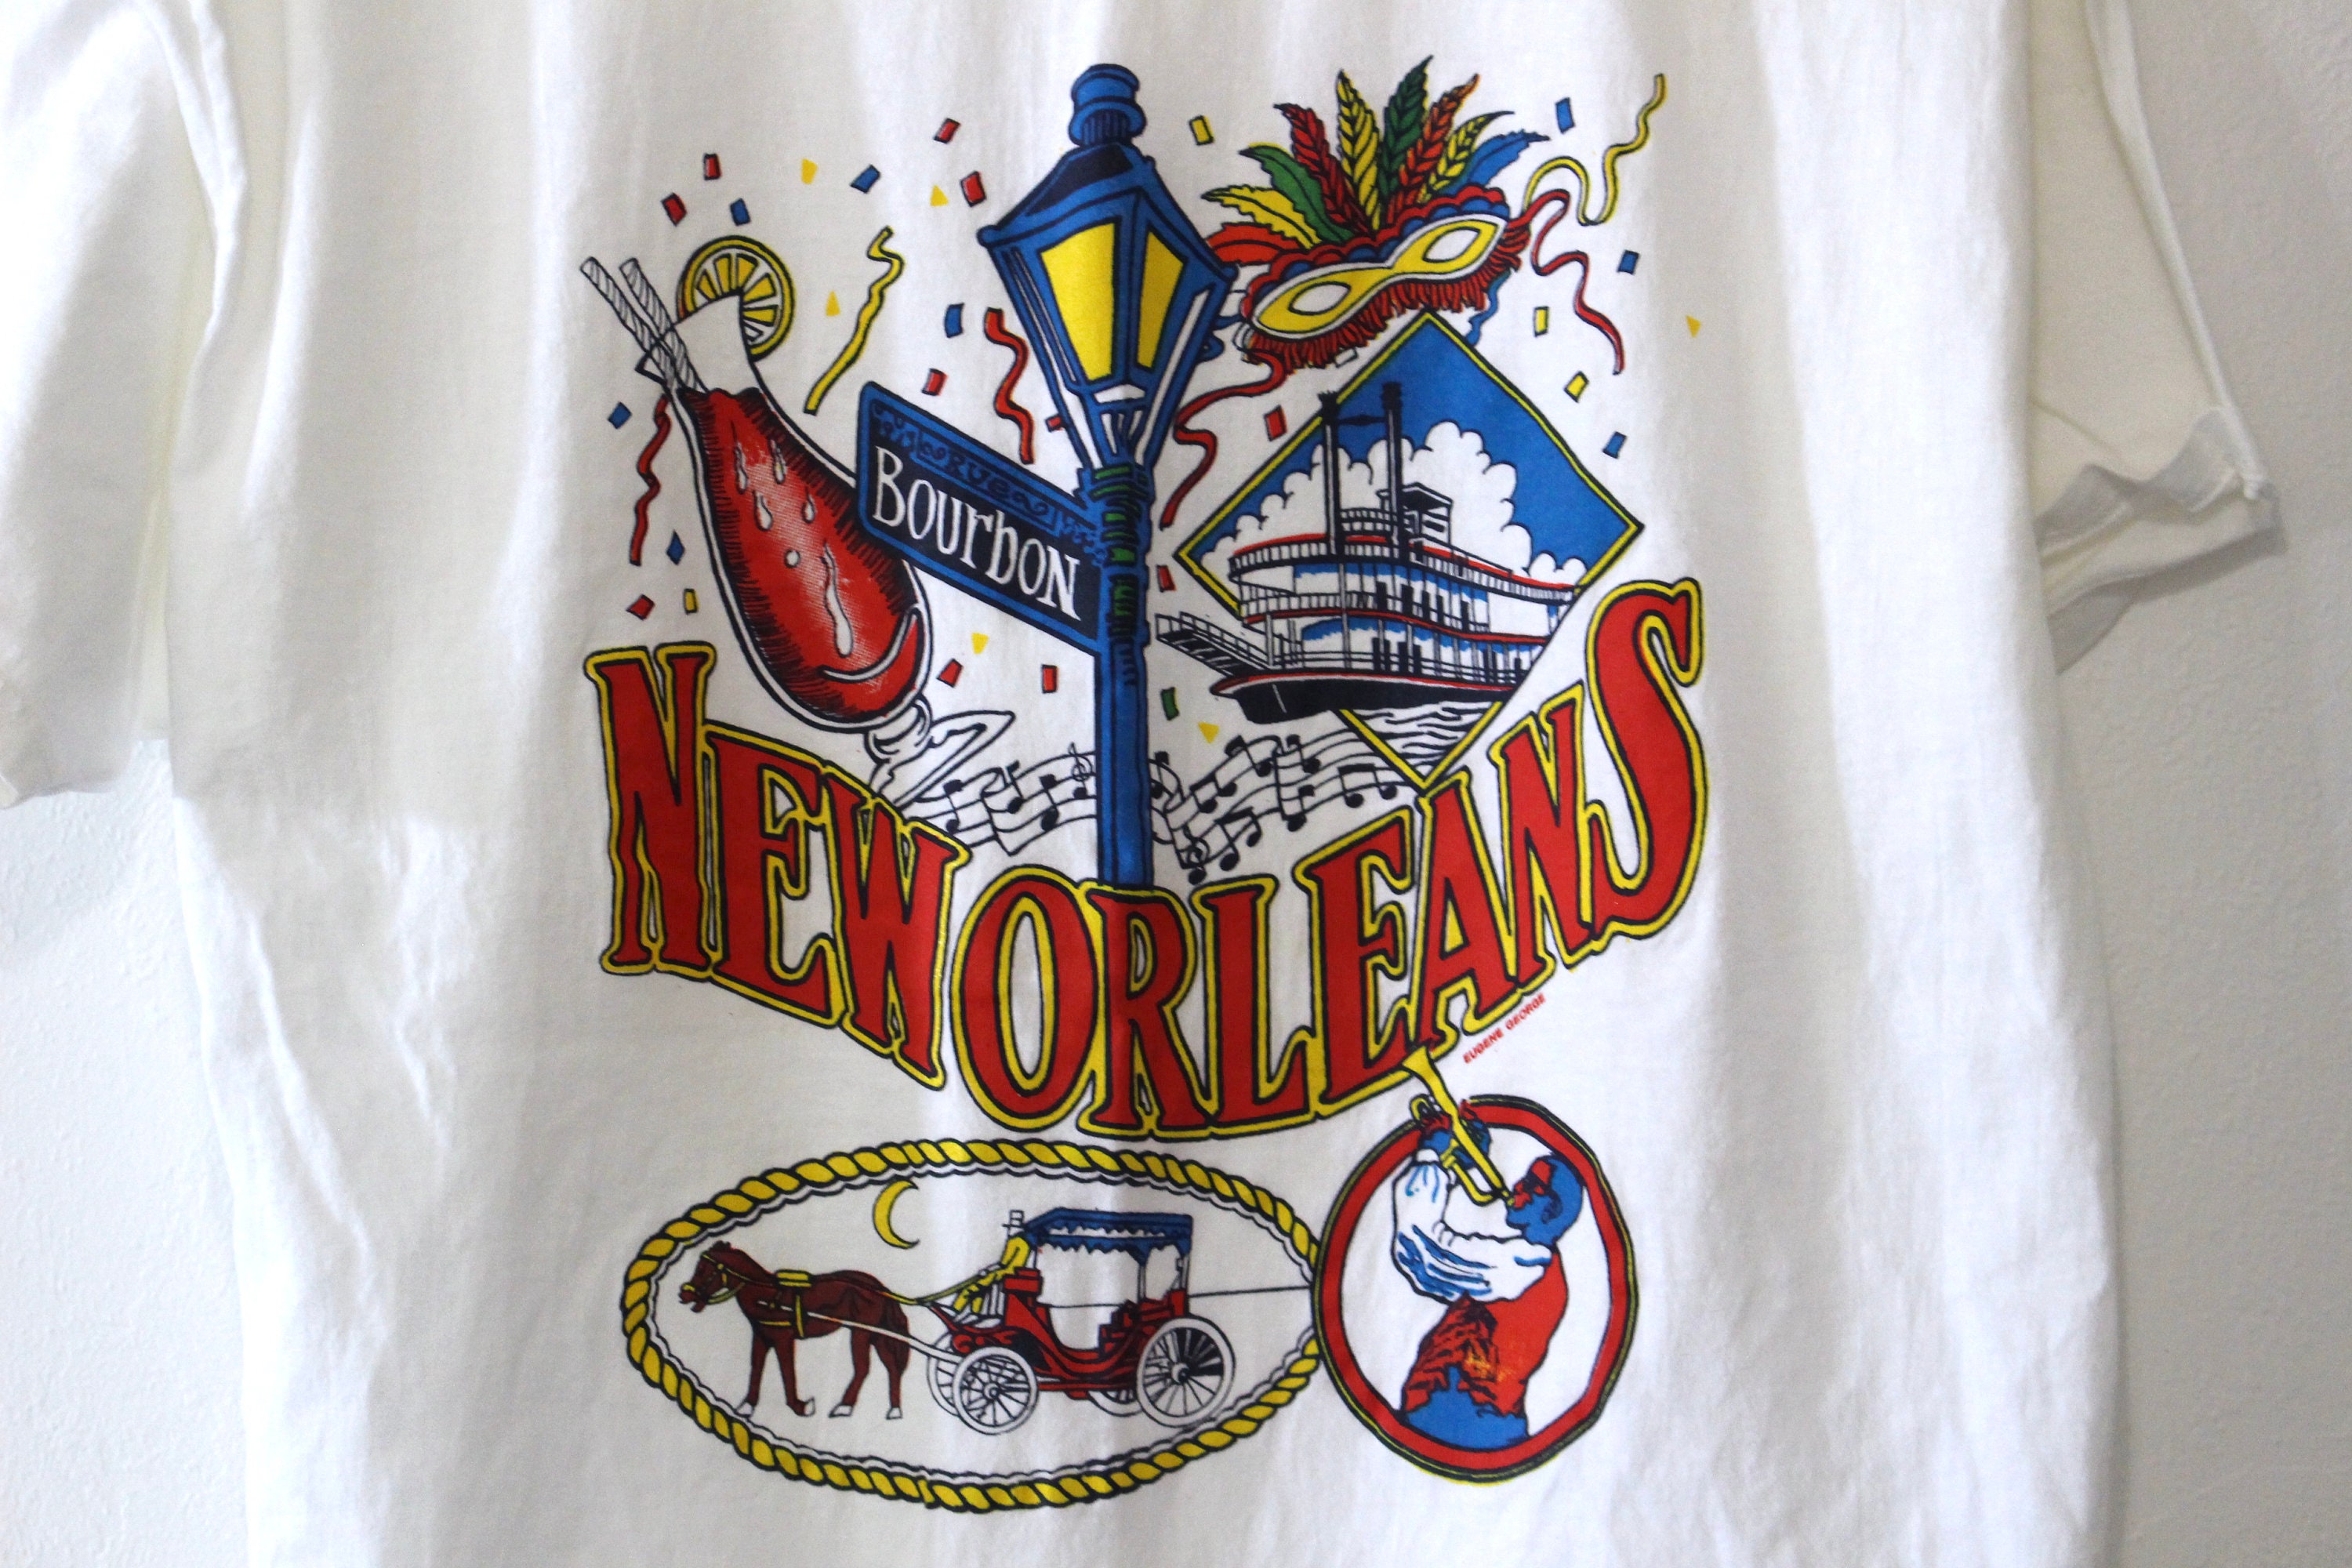 Vintage New Orleans Nola Louisiana Bourbon Street Jazz T Shirt XL